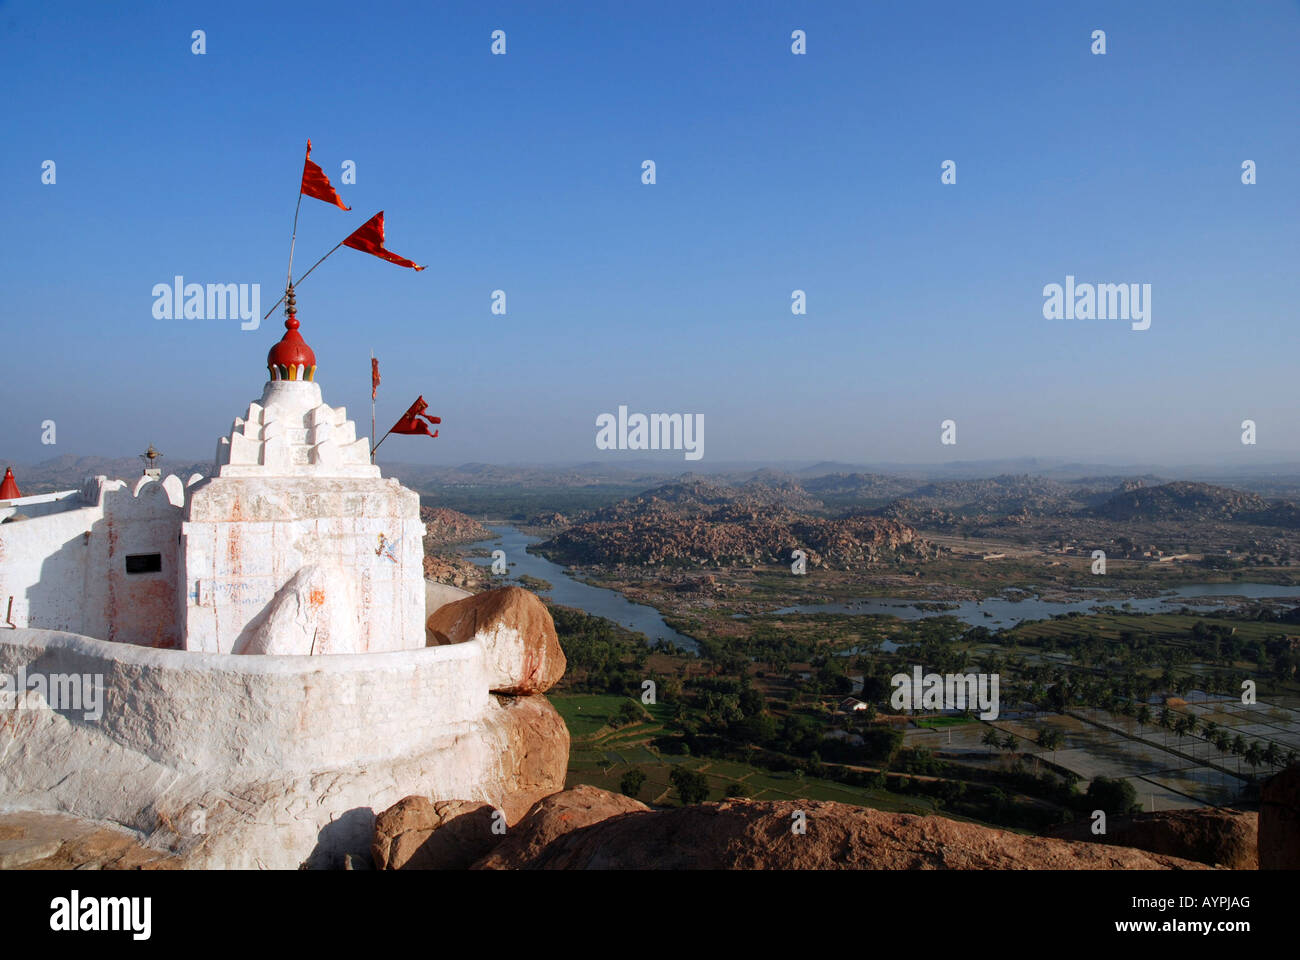 Templo Hanuman encalado con banderas rojas volando en la cima de la colina de Anjaneya, Kishkinda, Karnataka, India Foto de stock